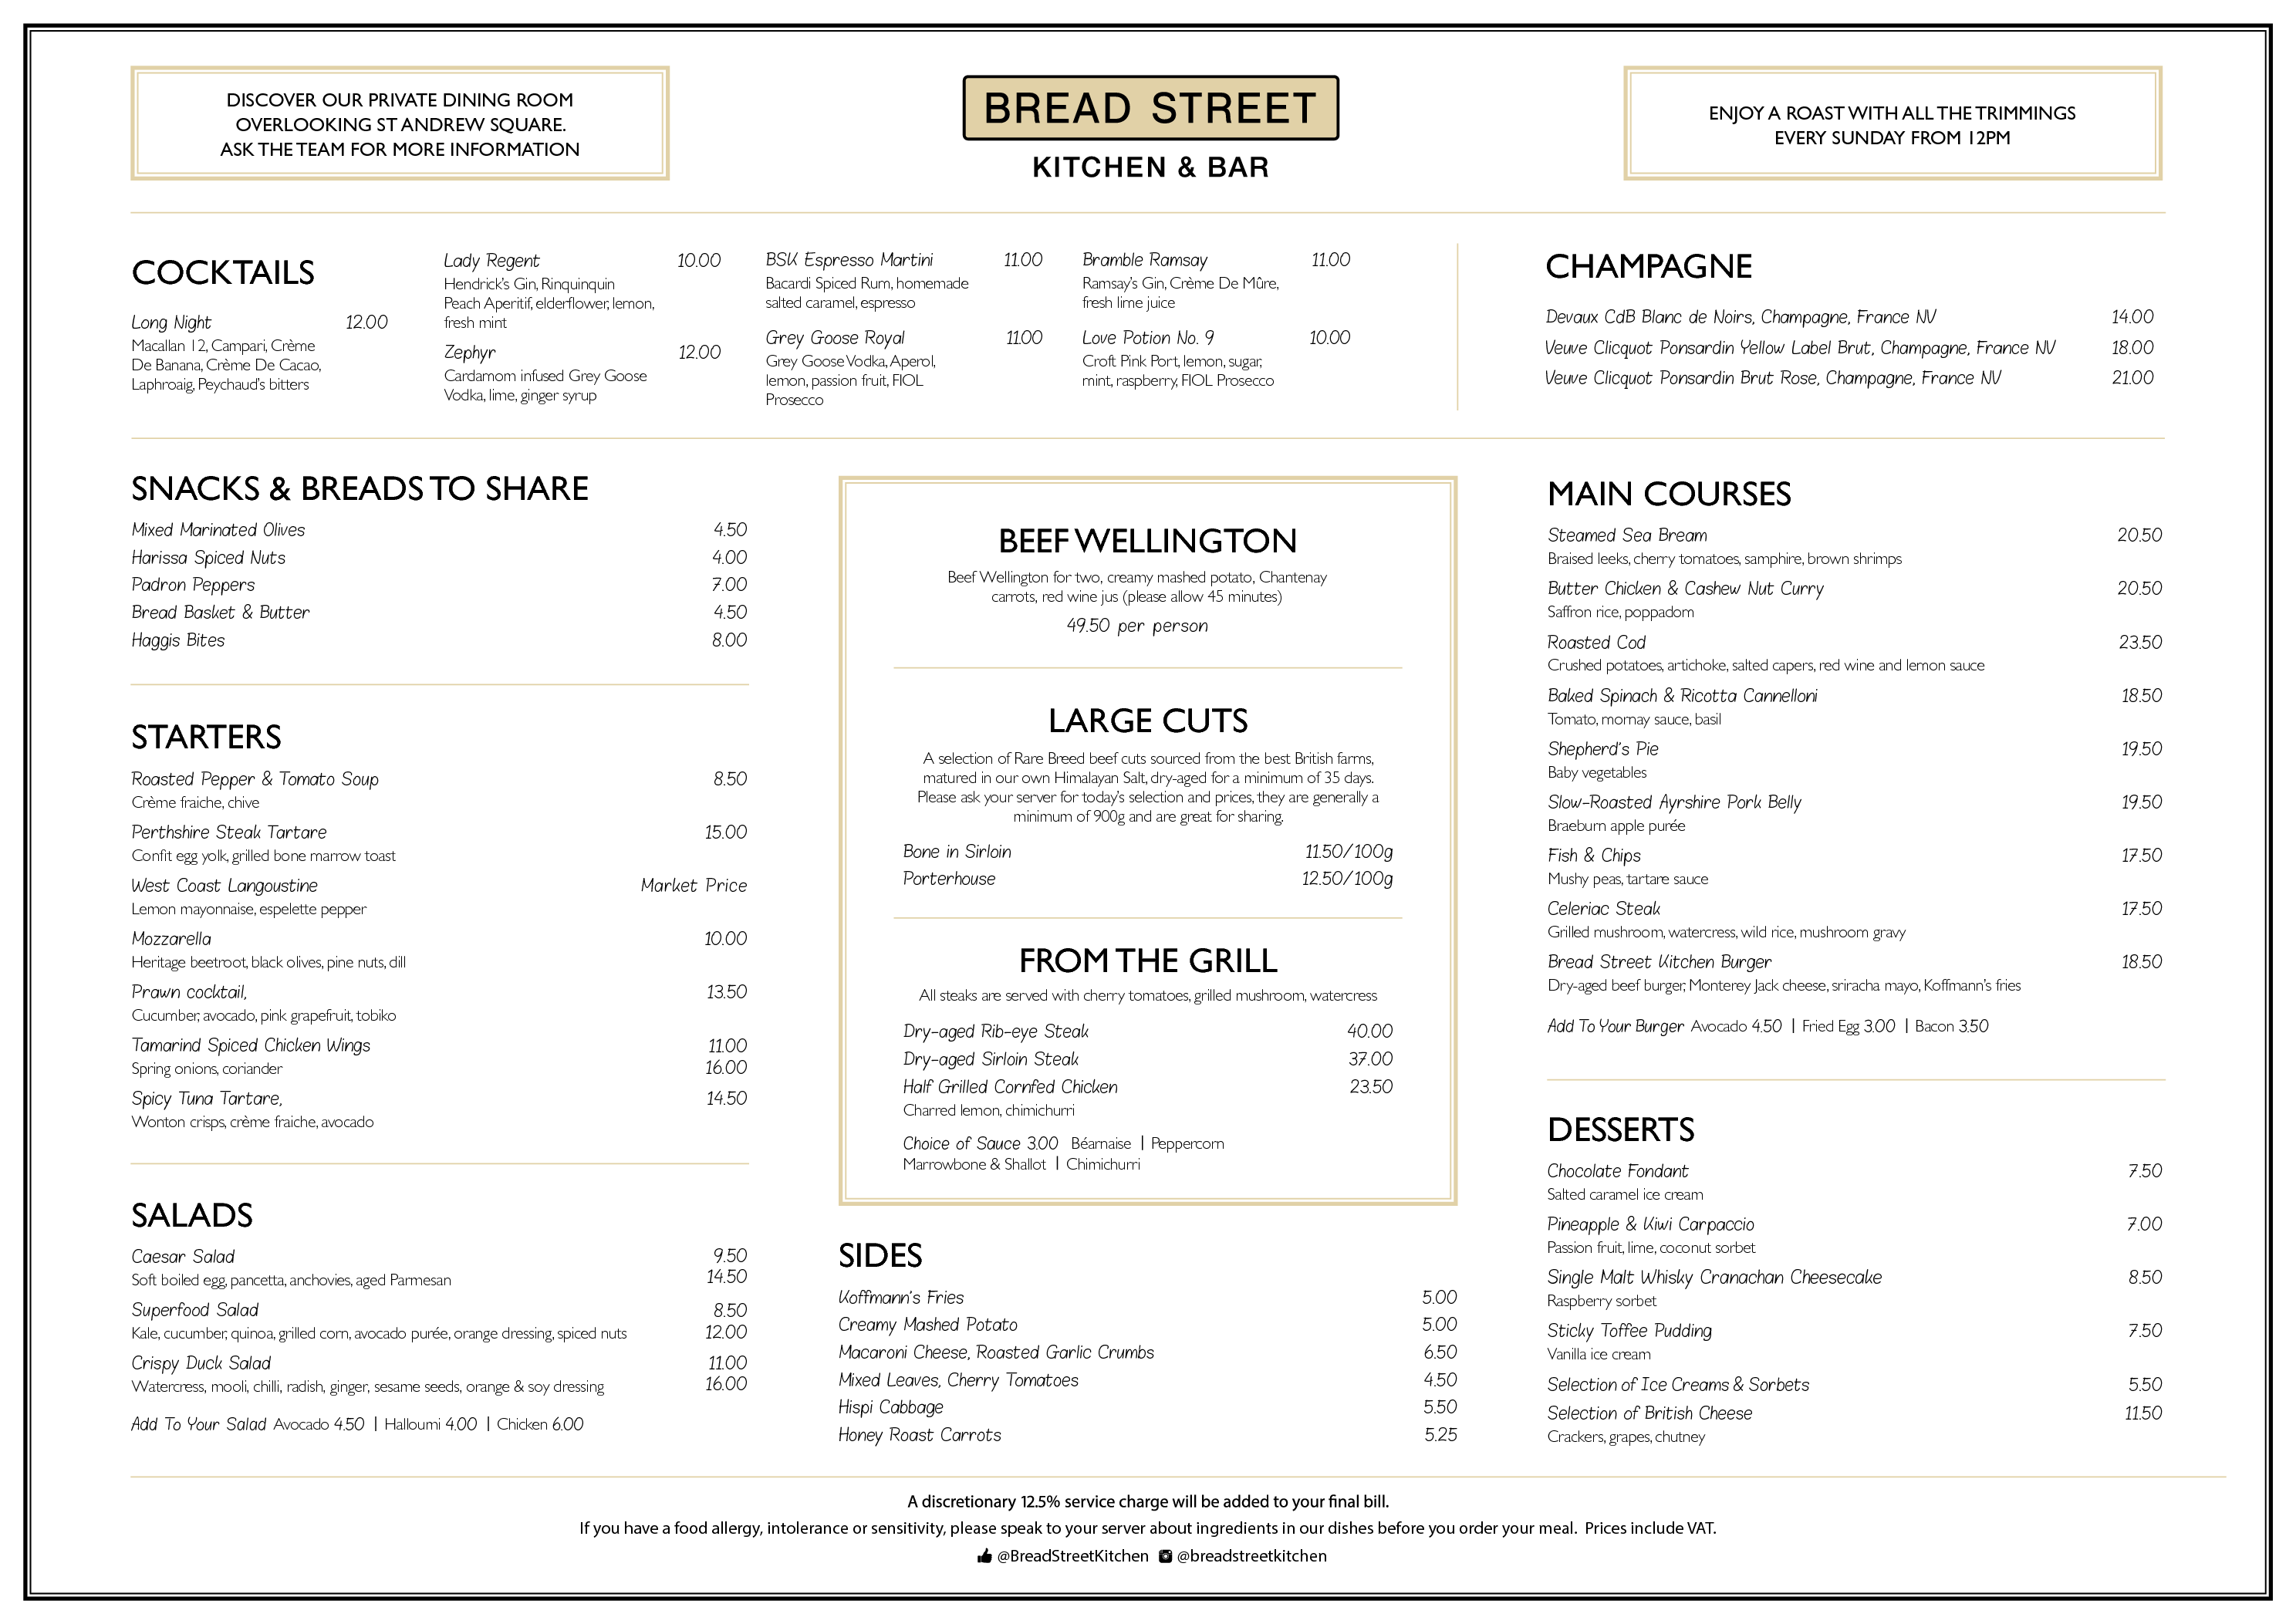 bread street kitchen and bar menu